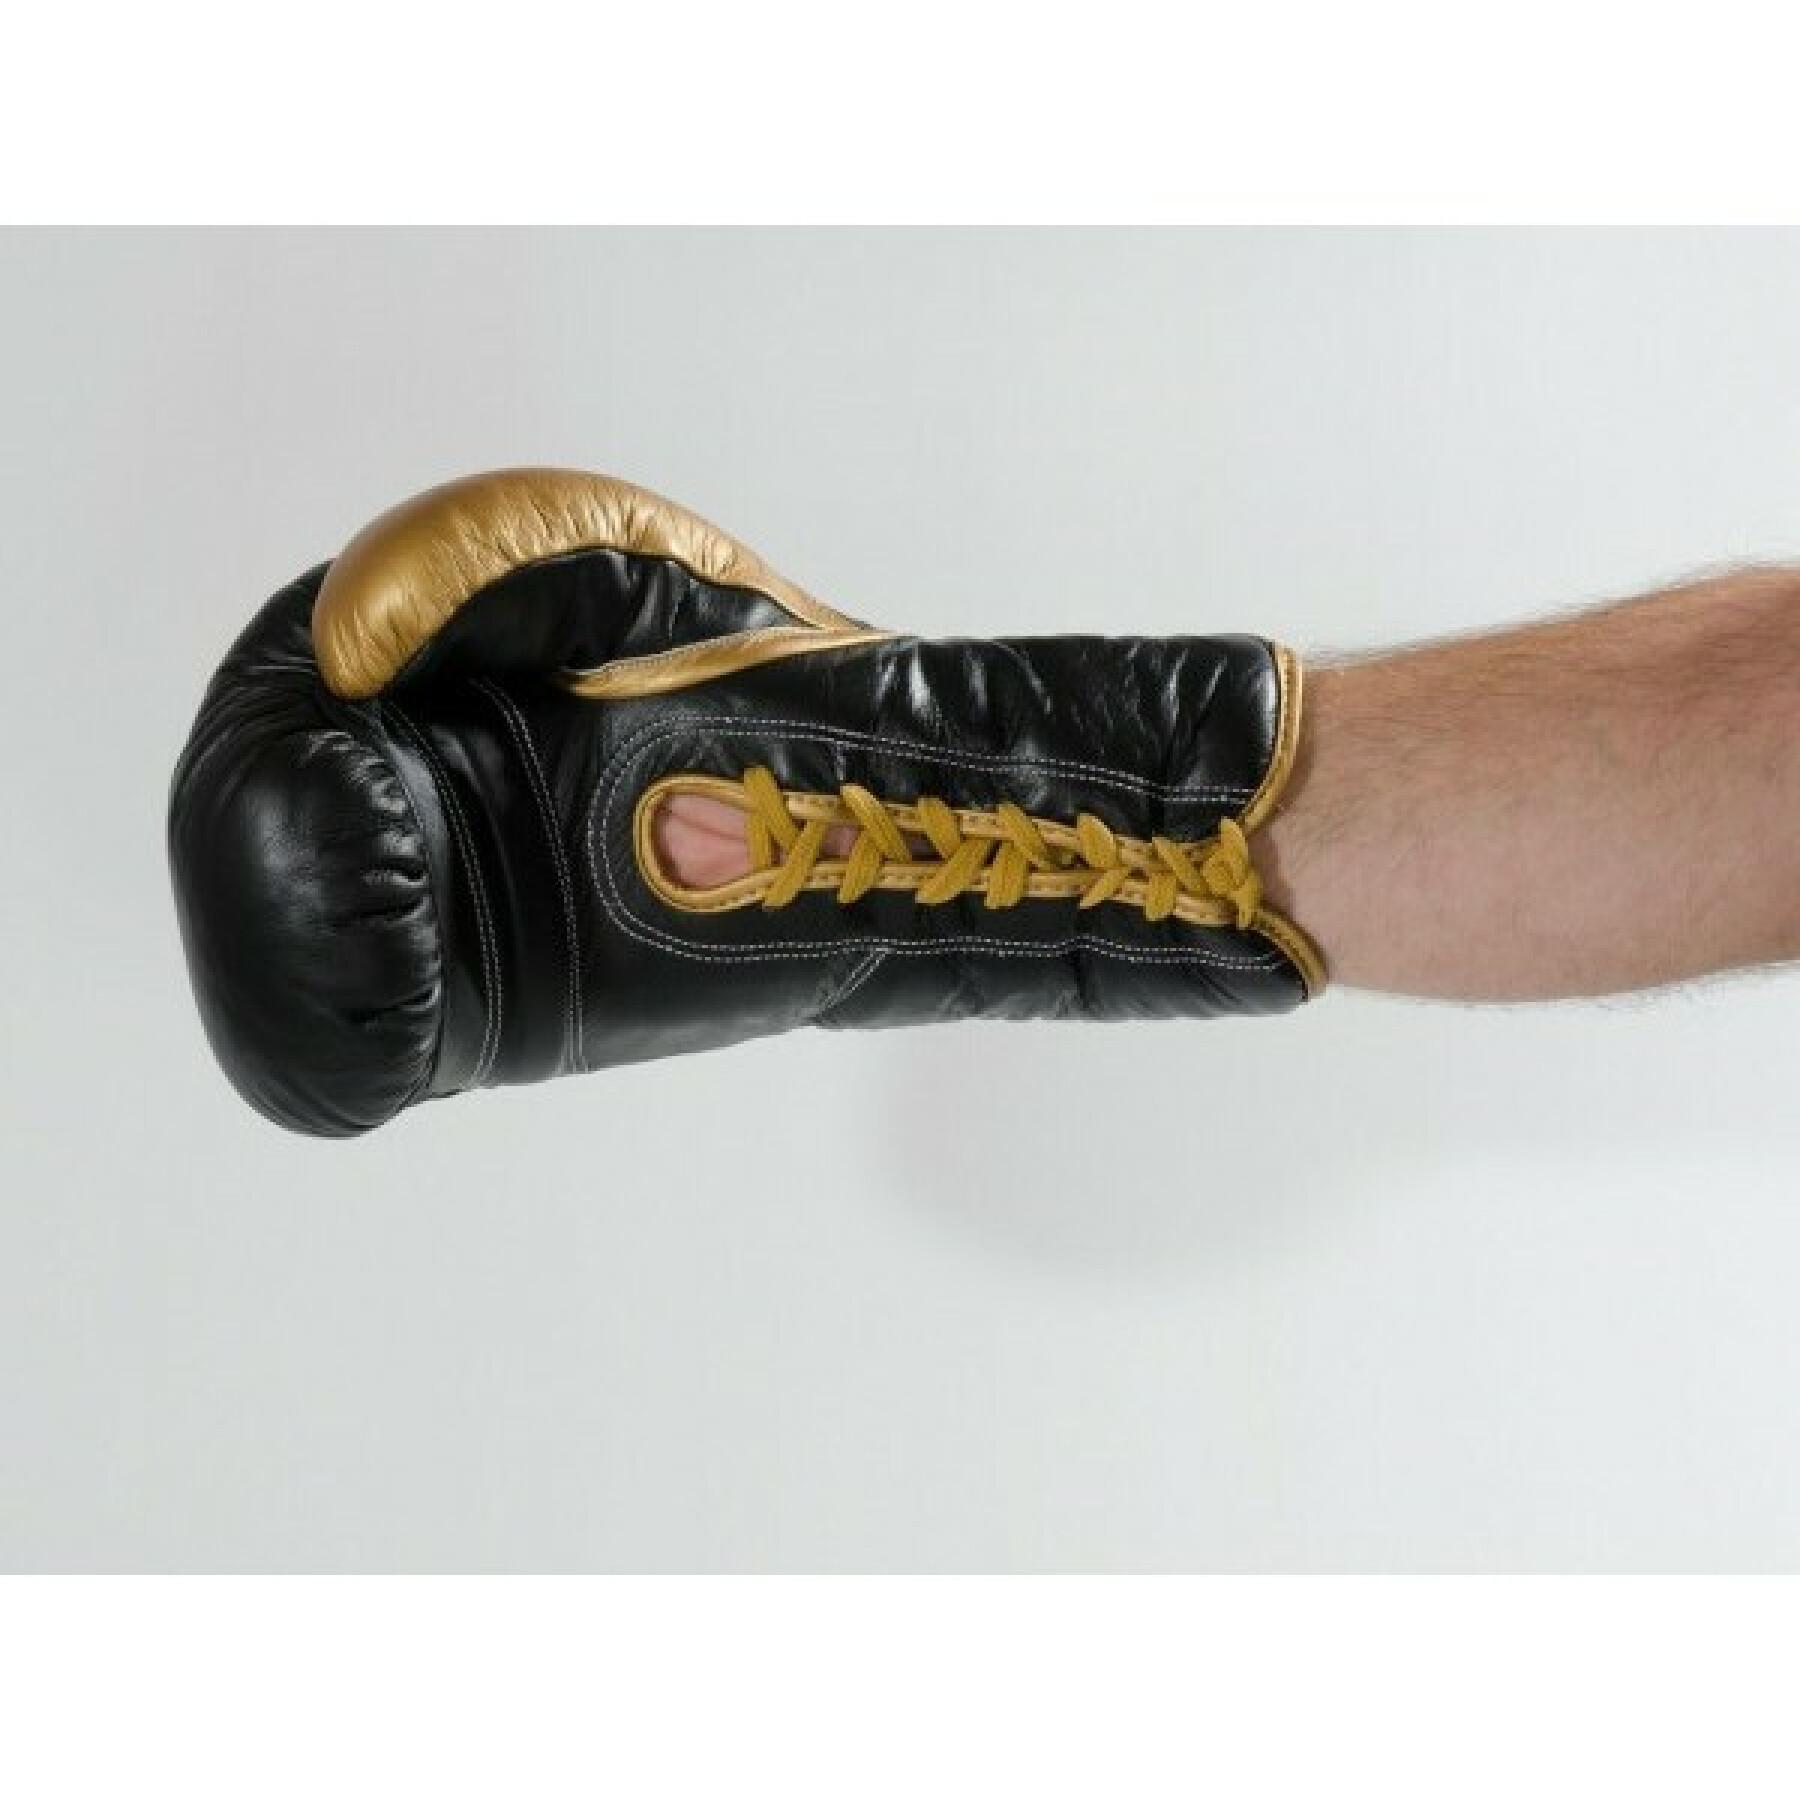 Gants de boxe en cuir à lacets Kwon Professional Boxing